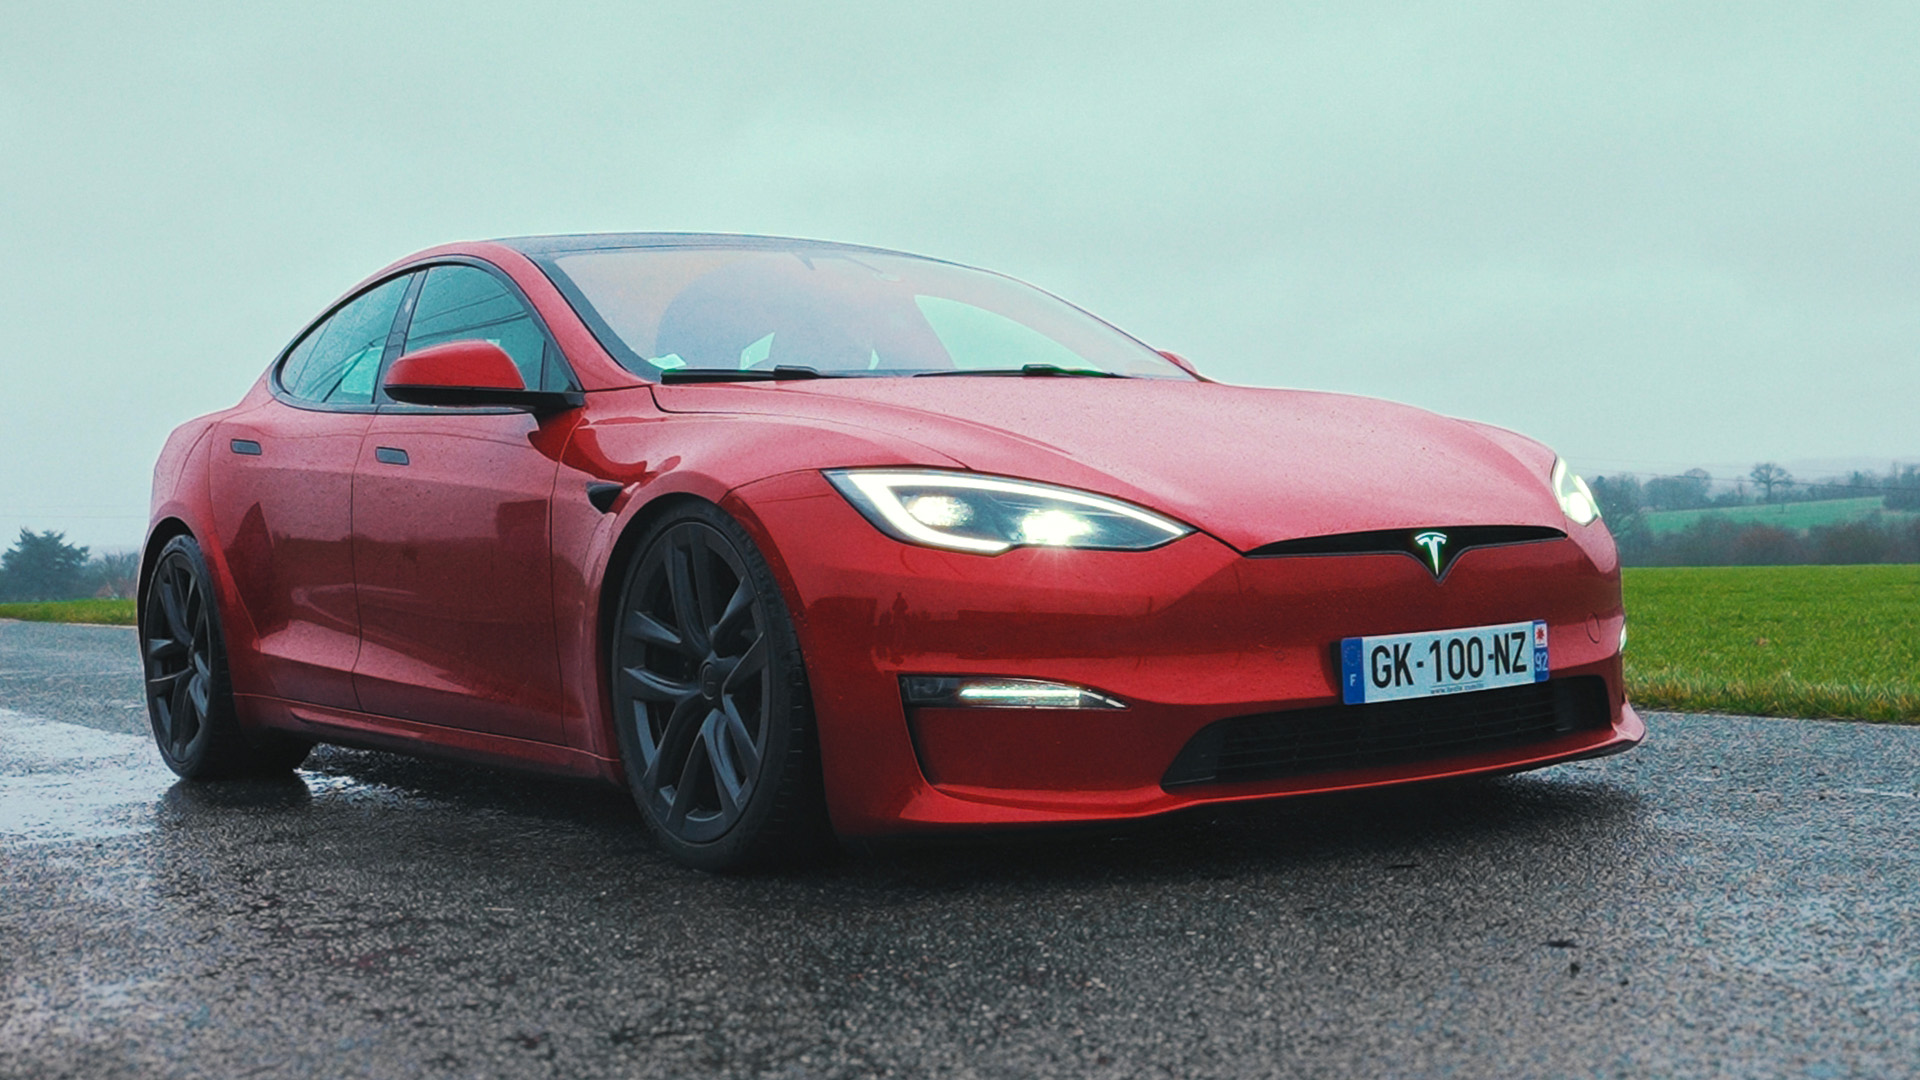 Les 7 défauts que Tesla doit absolument corriger sur la Model 3 - Numerama